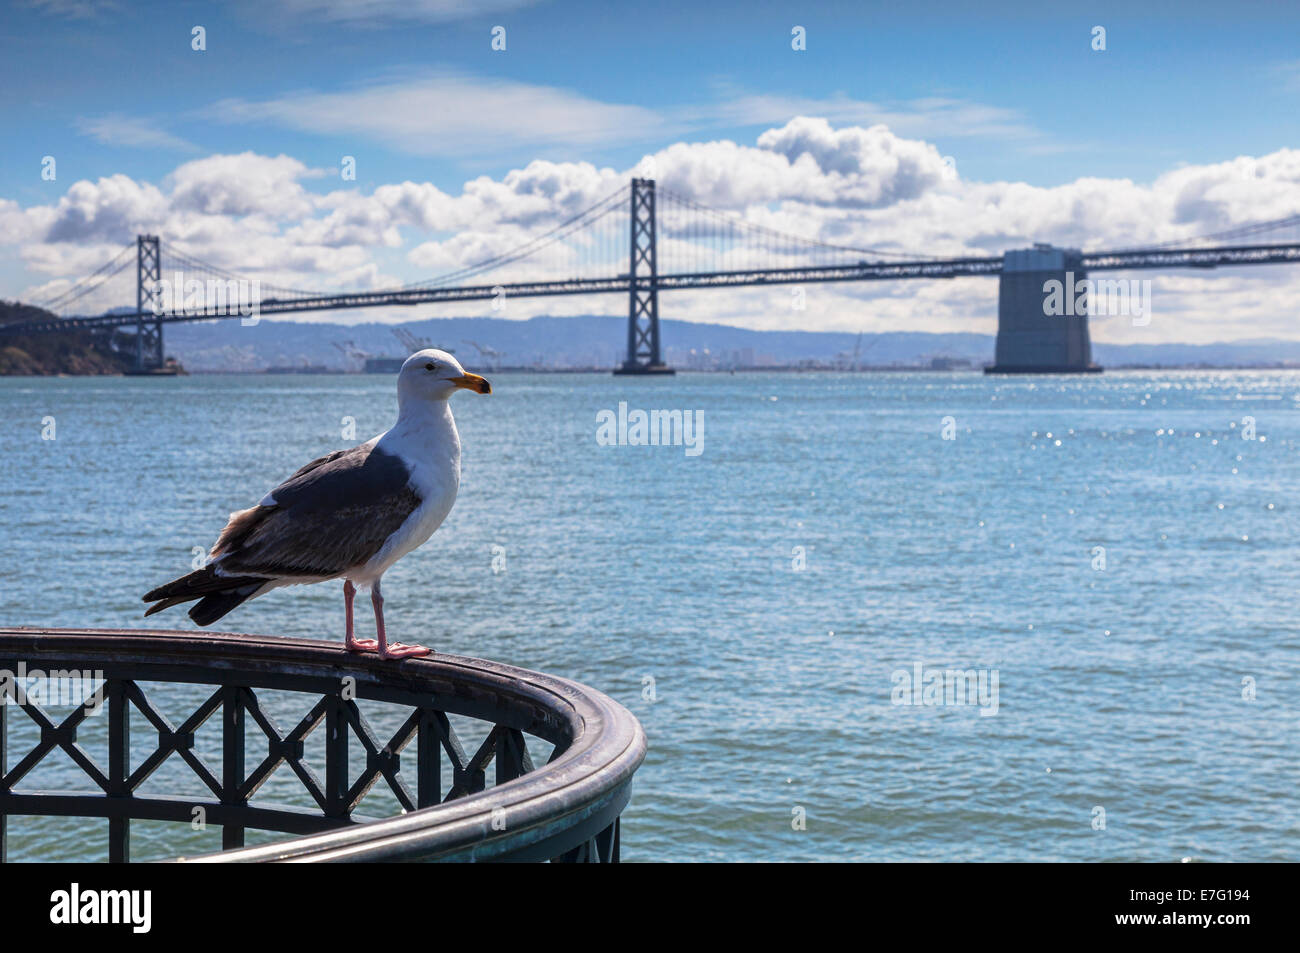 San Francisco Bay, eine Möwe auf einer Schiene, die Bay Bridge im Hintergrund thront. Möwe im Mittelpunkt. Stockfoto